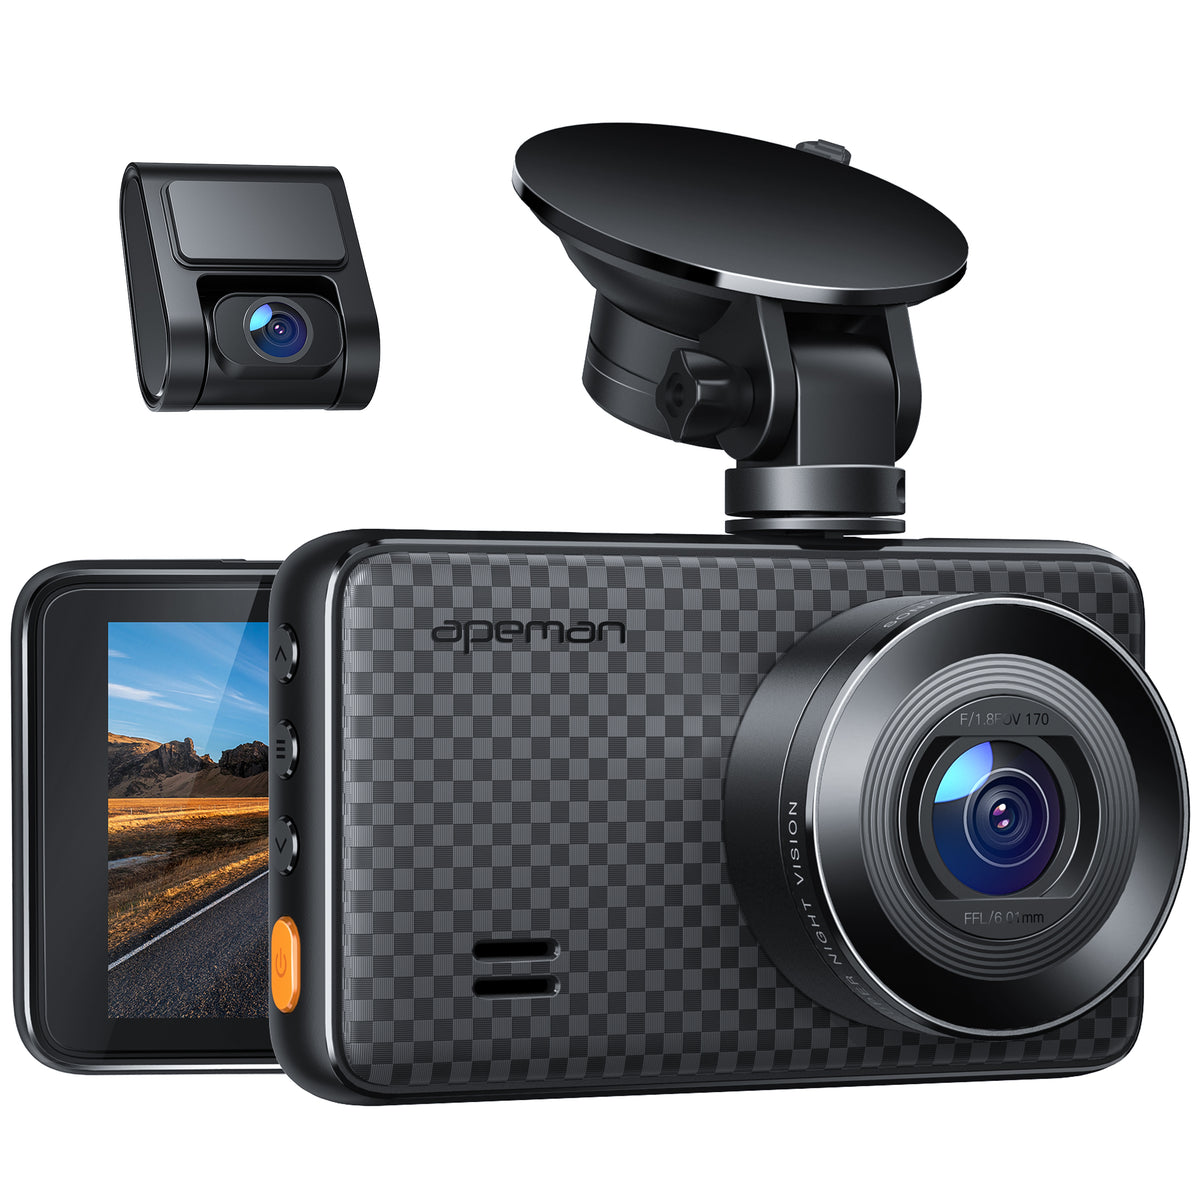 APEMAN C420 Dash Camera 1080P Full HD 30 Fps